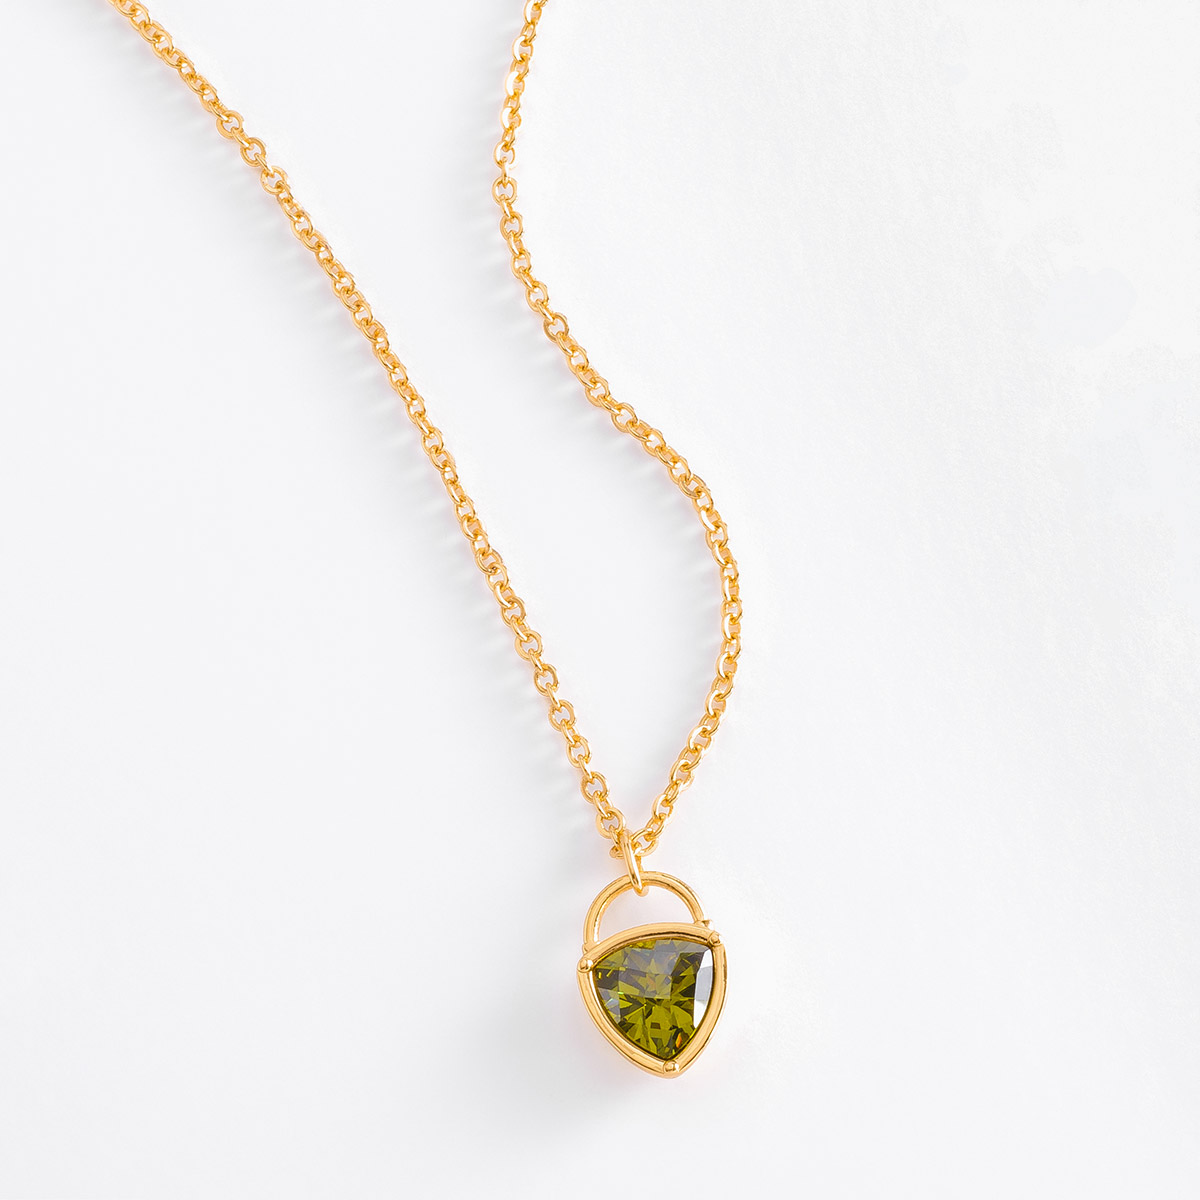 Delicado collar en baño de oro con piedra en tono verde.
-Collar con Dije
-45 cm + 10 cm ext.